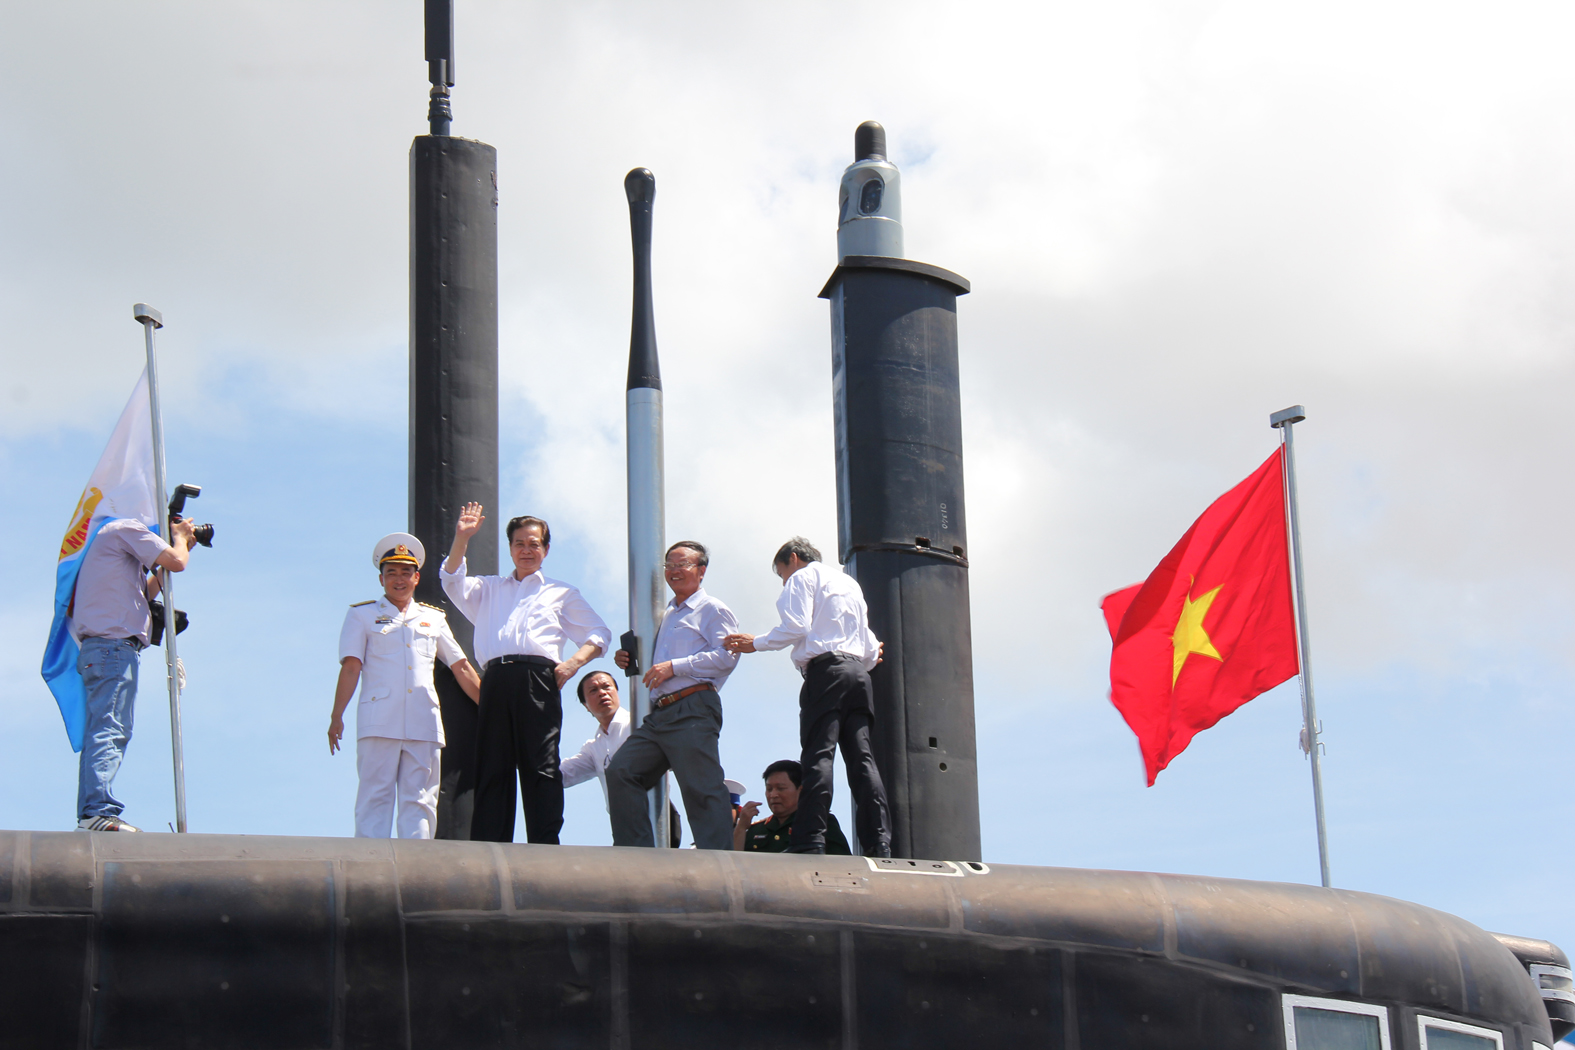 Thủ tướng Nguyễn Tấn Dũng trên đài chỉ huy tàu ngầm Kilo 636 HQ-183 TP Hồ Chí Minh sau khi cờ Tổ quốc được kéo lên, tung bay